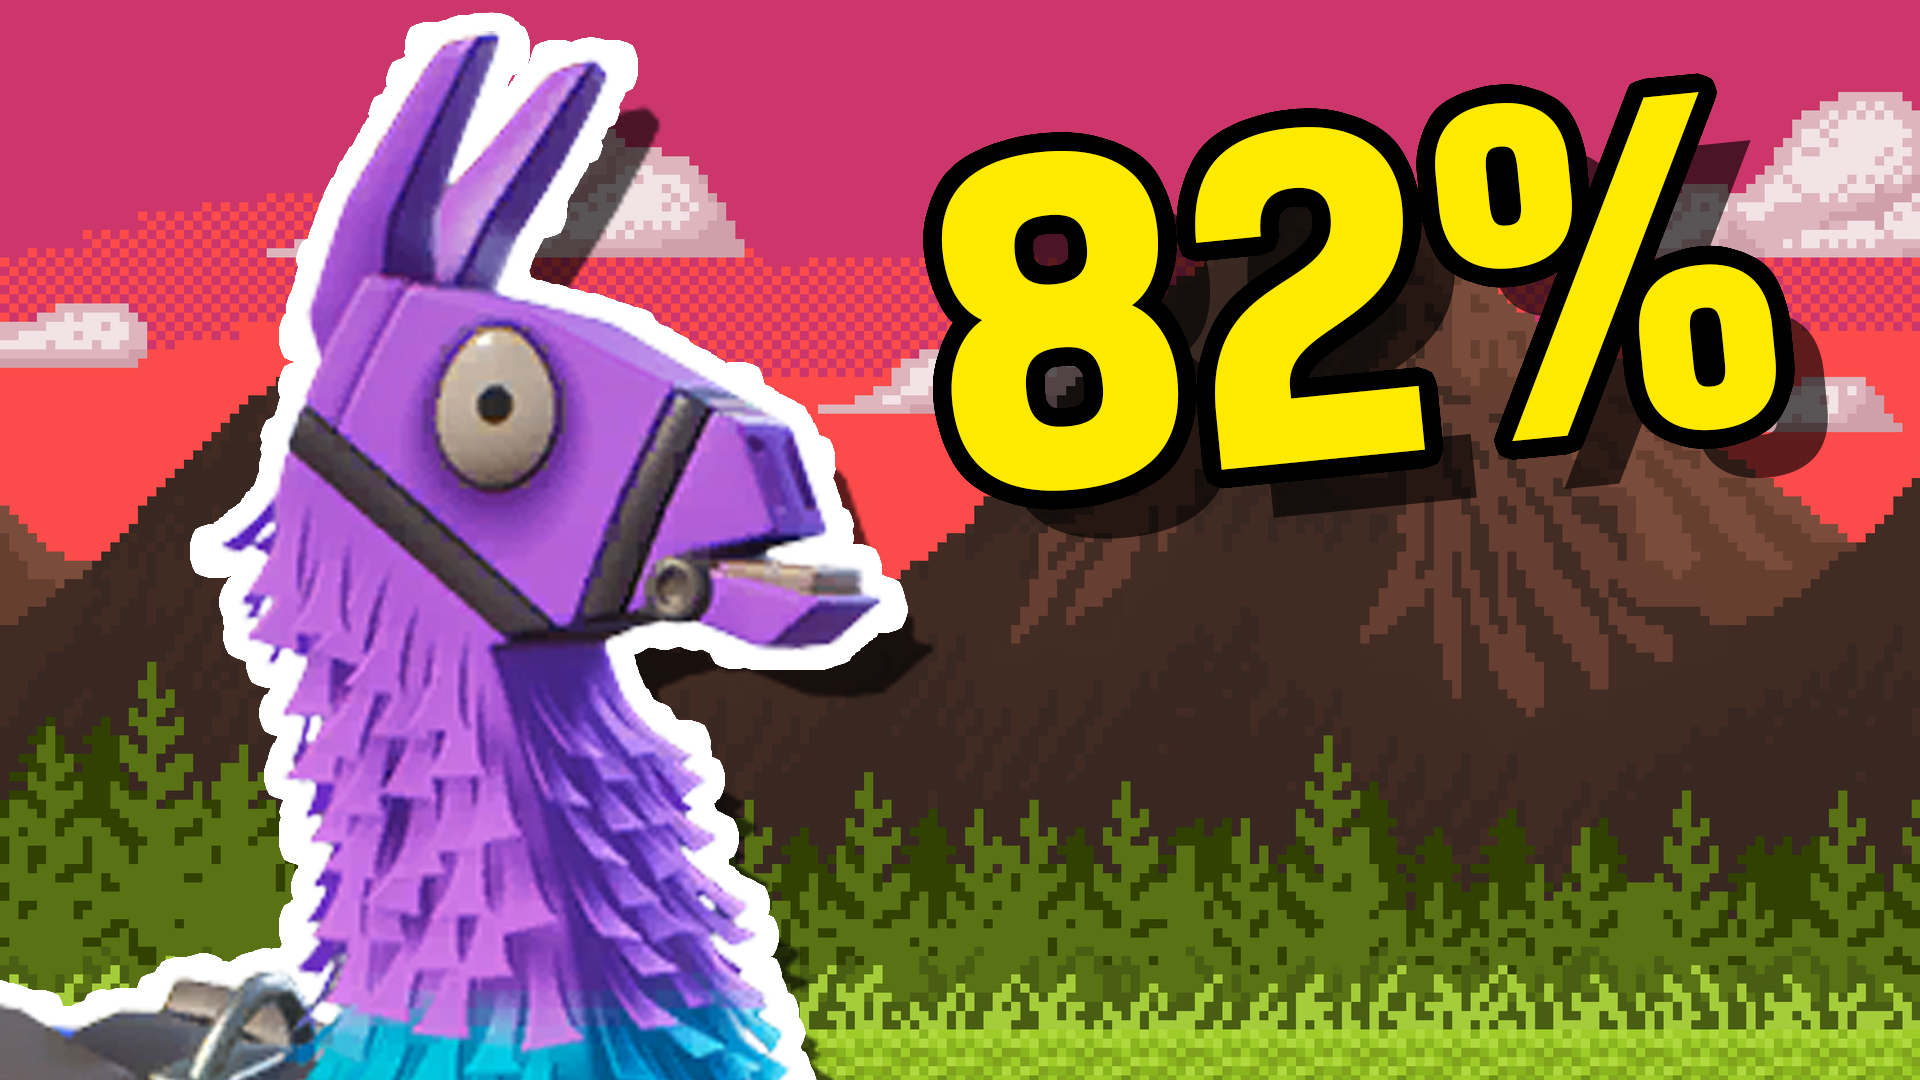 82% Llama Loot